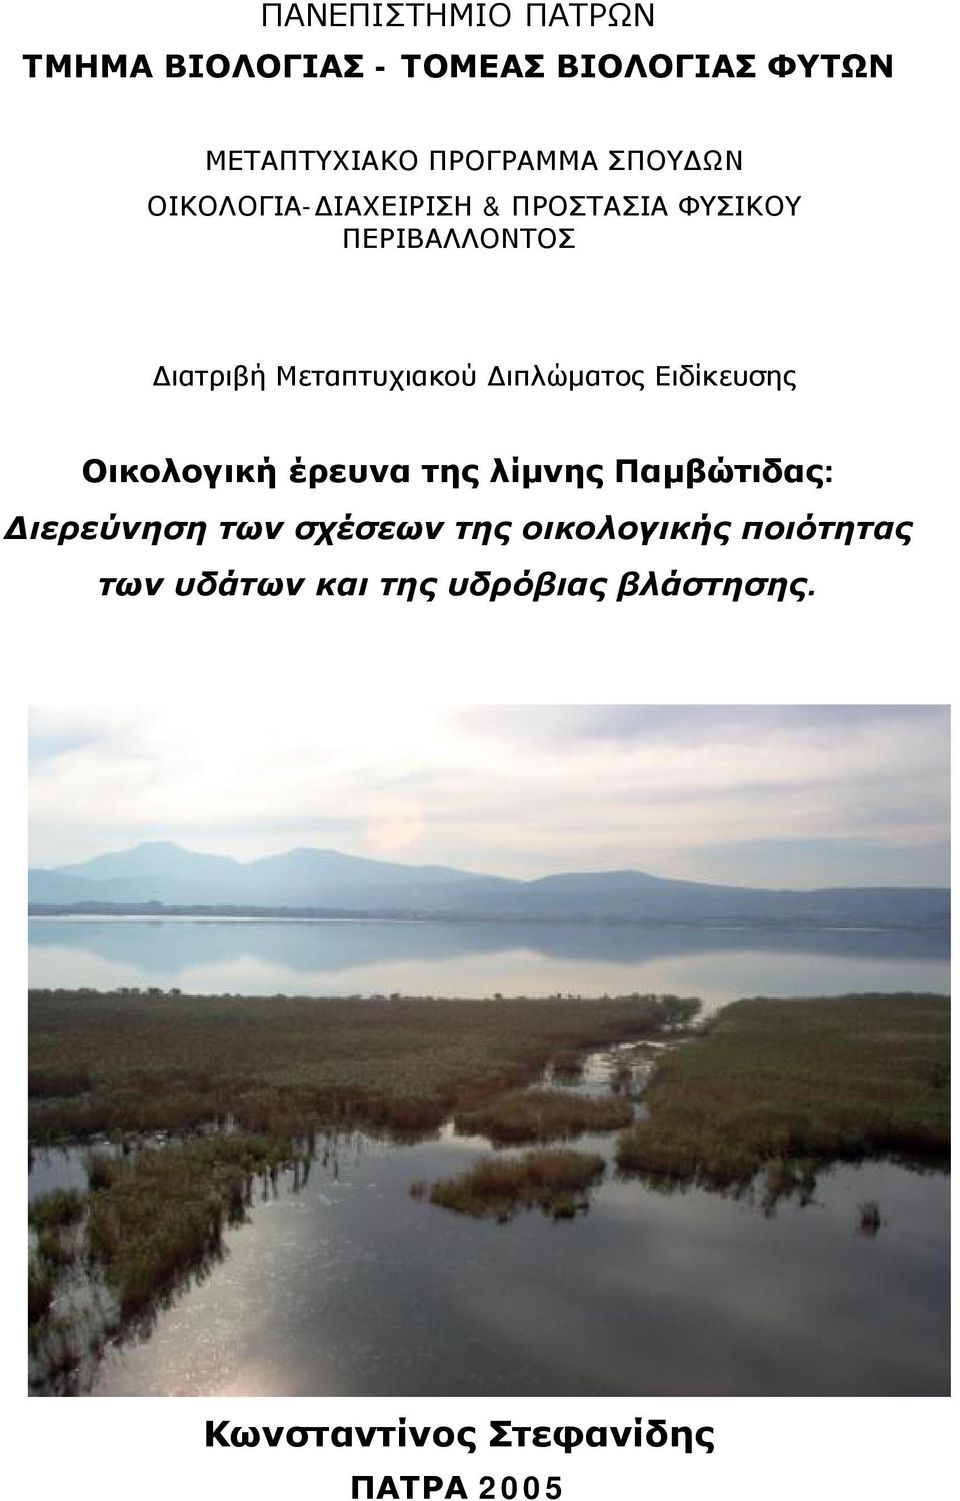 Διπλώματος Ειδίκευσης Οικολογική έρευνα της λίμνης Παμβώτιδας: Διερεύνηση των σχέσεων